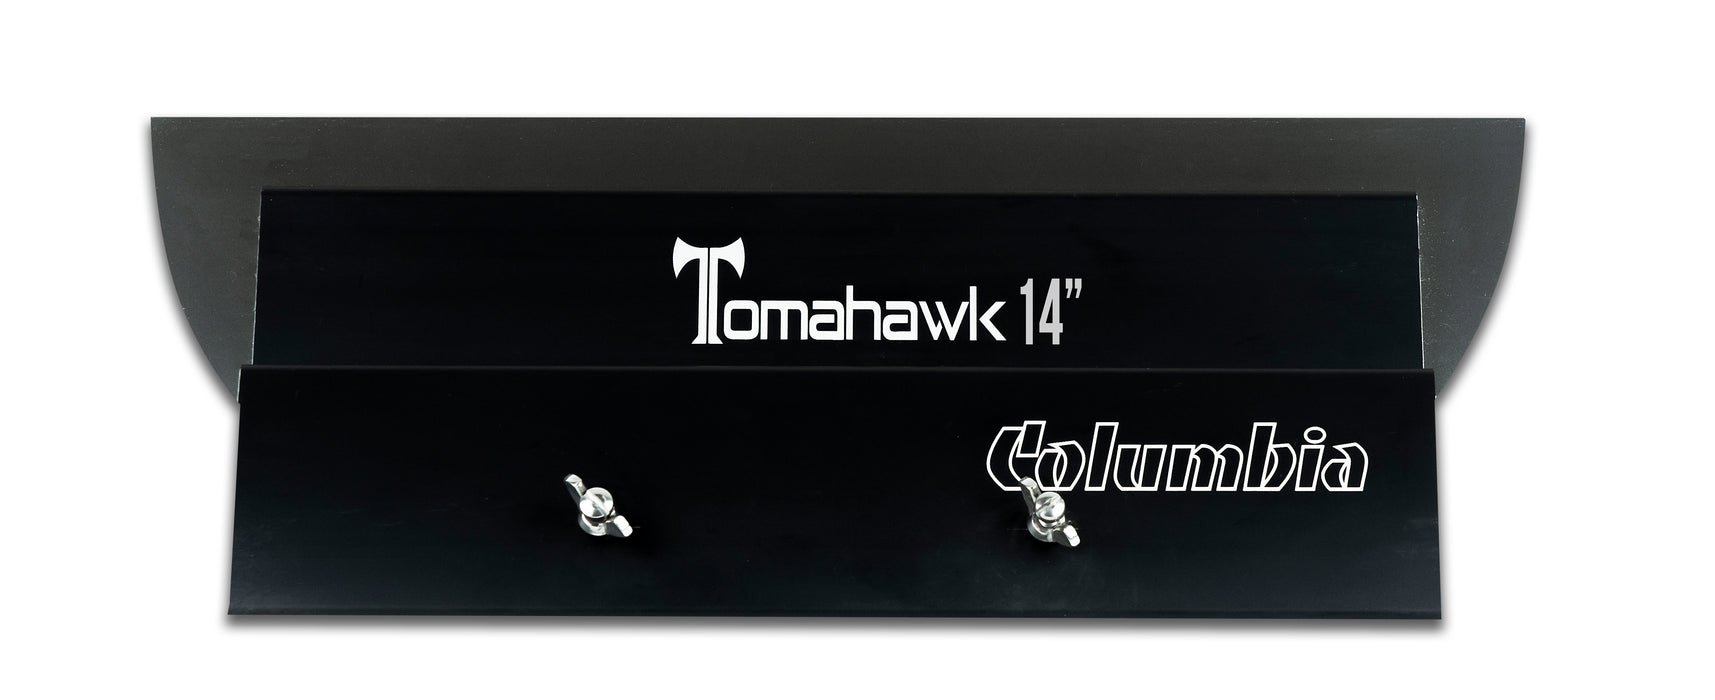 Couteau de finition Columbia Tomahawk